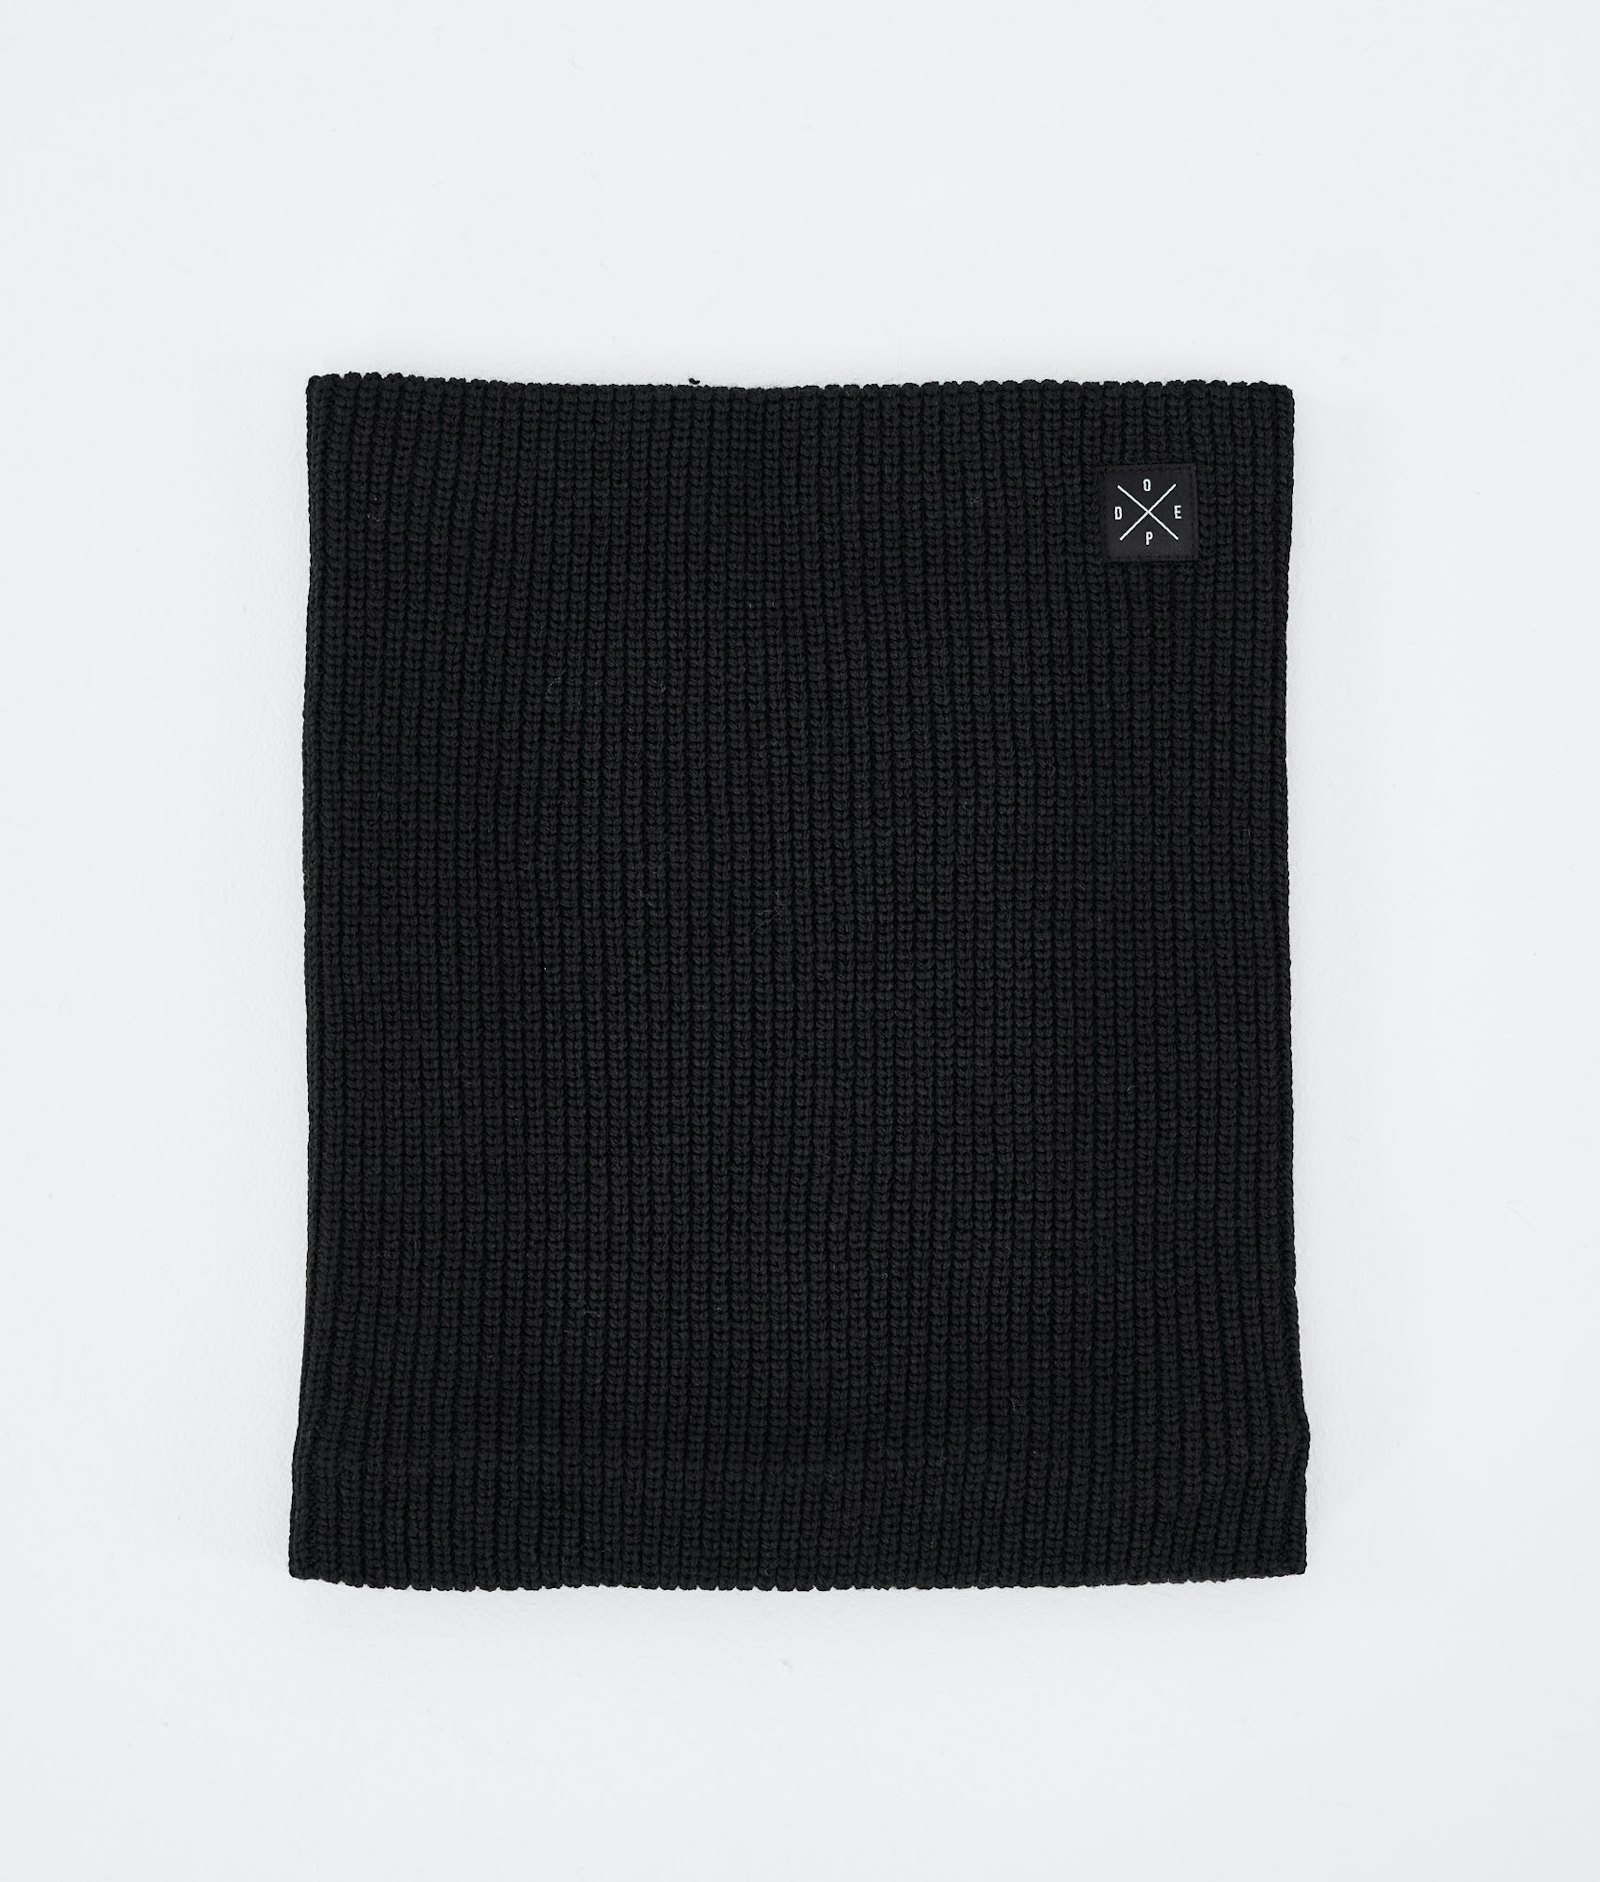 Dope 2X-UP Knitted Tour de cou Homme Black - Noir